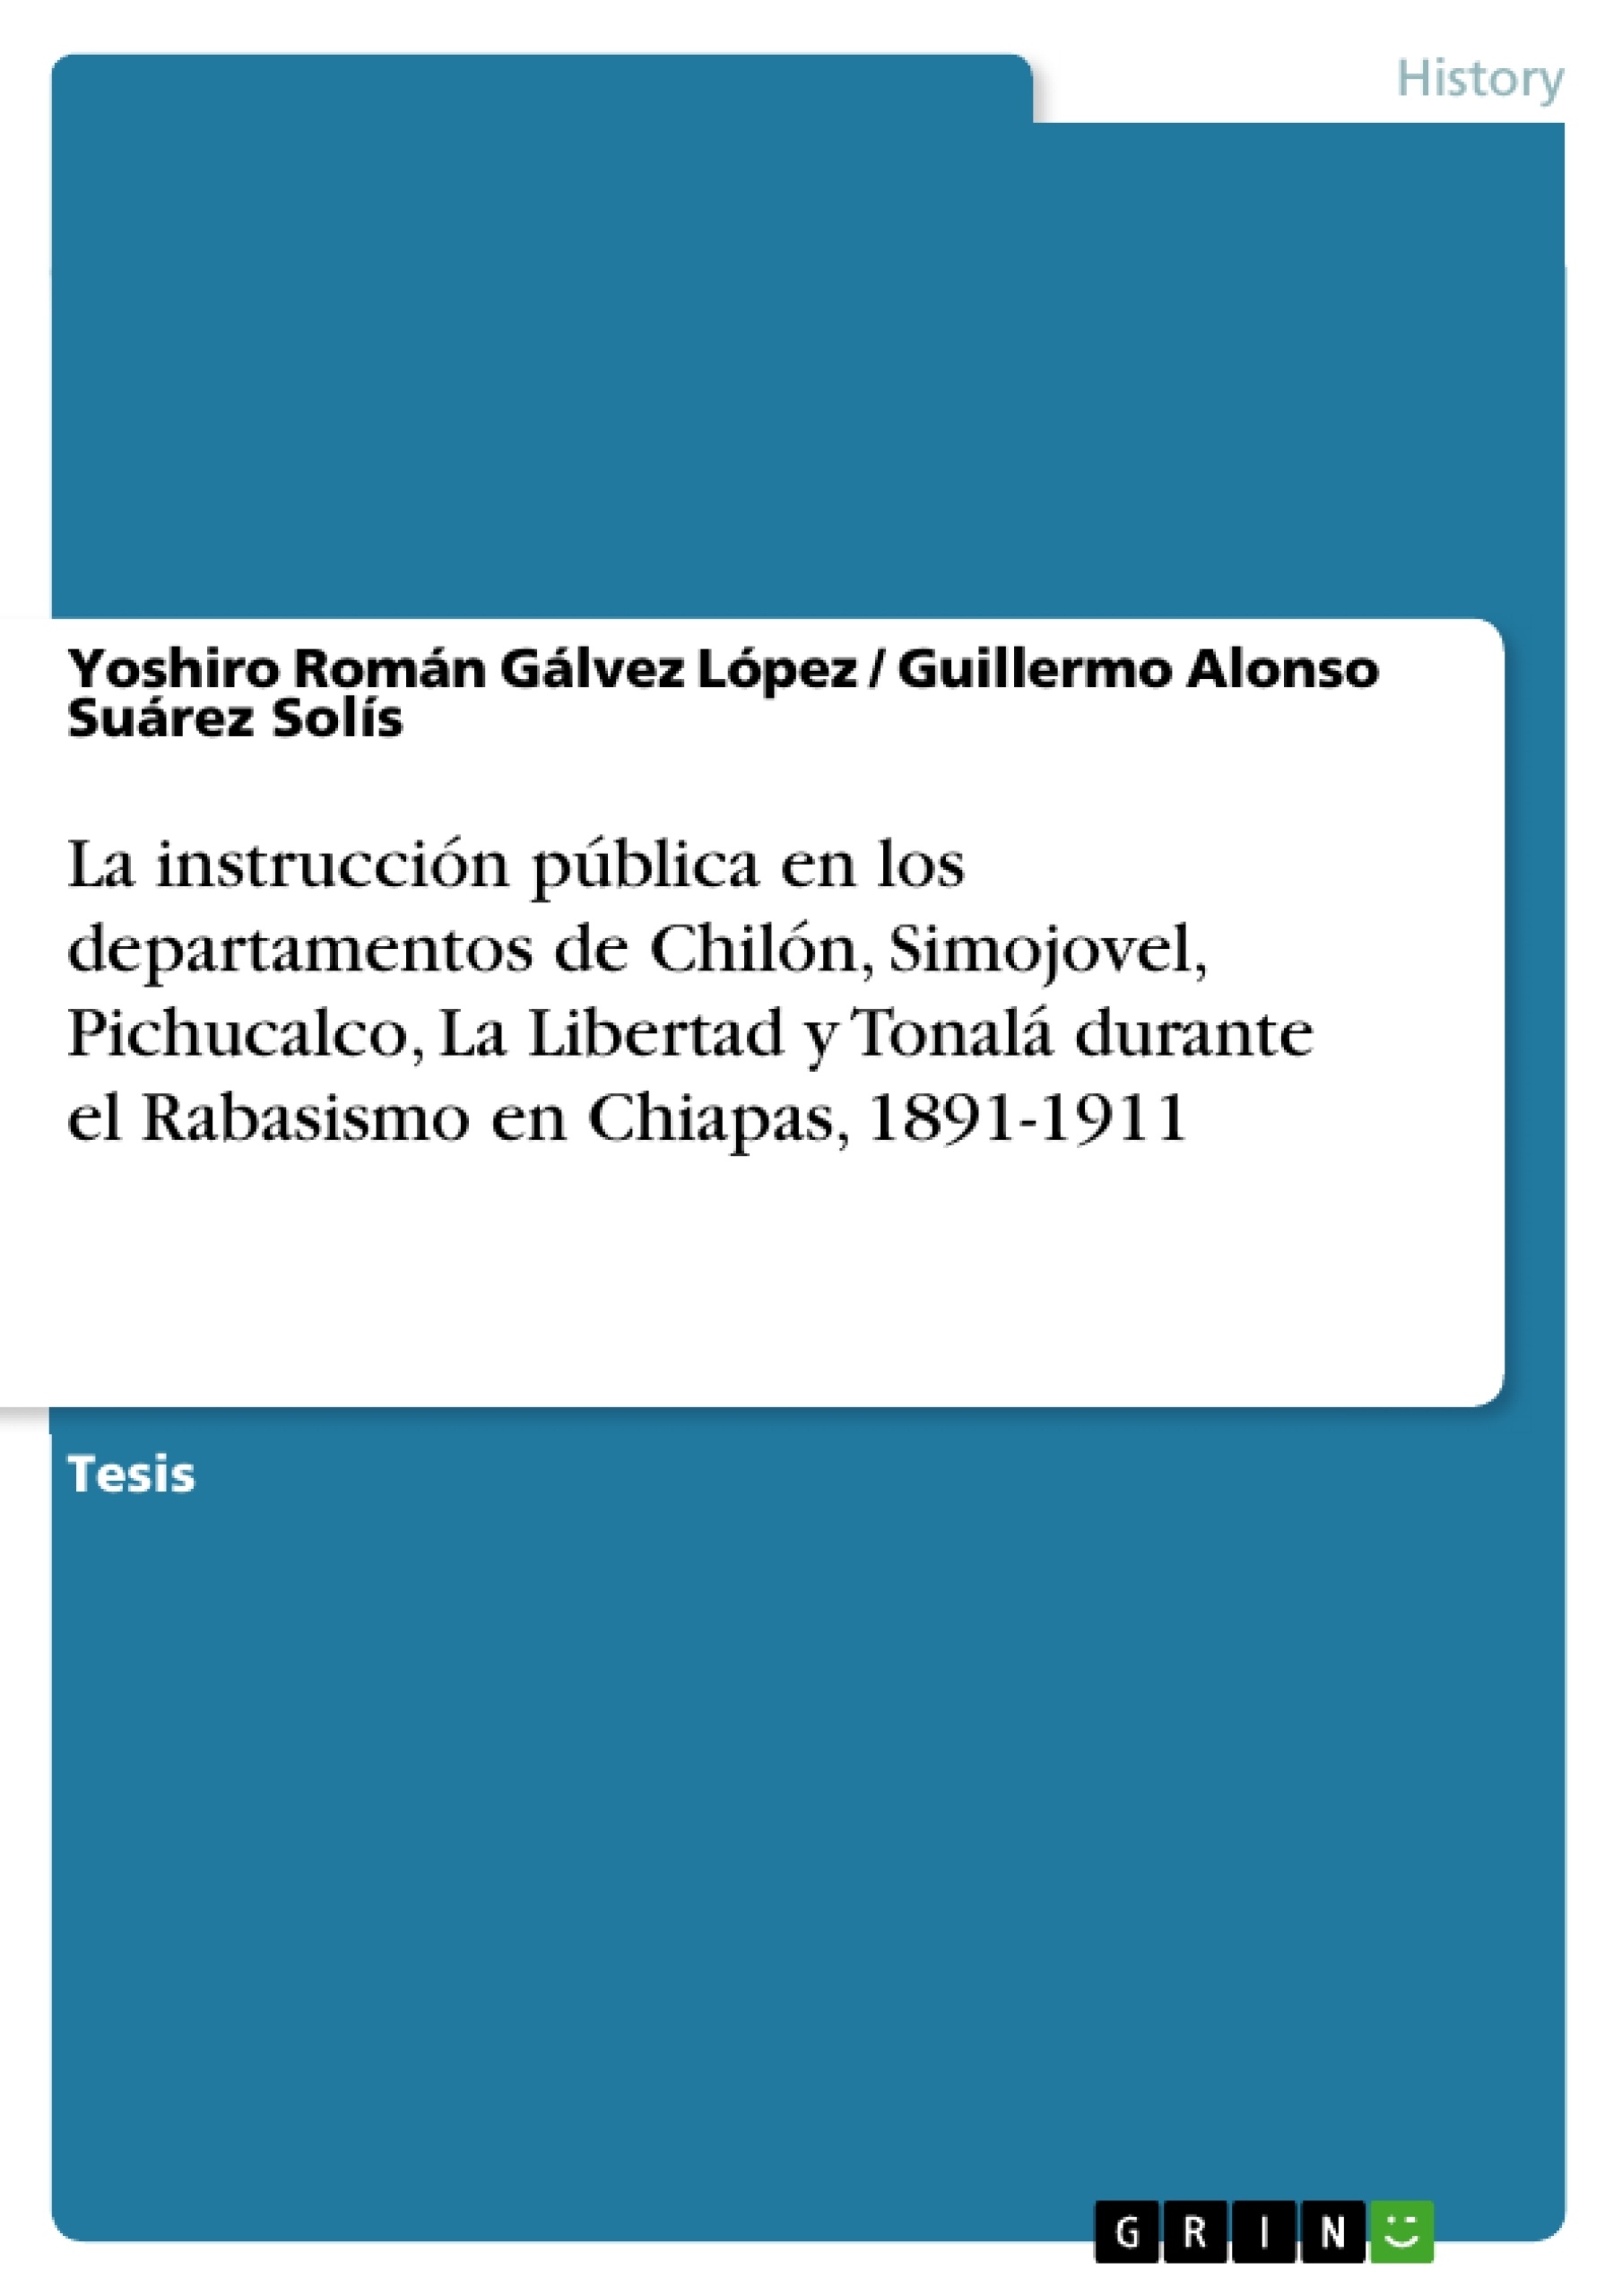 Título: La instrucción pública en los departamentos de Chilón, Simojovel, Pichucalco, La Libertad y Tonalá durante el Rabasismo en Chiapas, 1891-1911